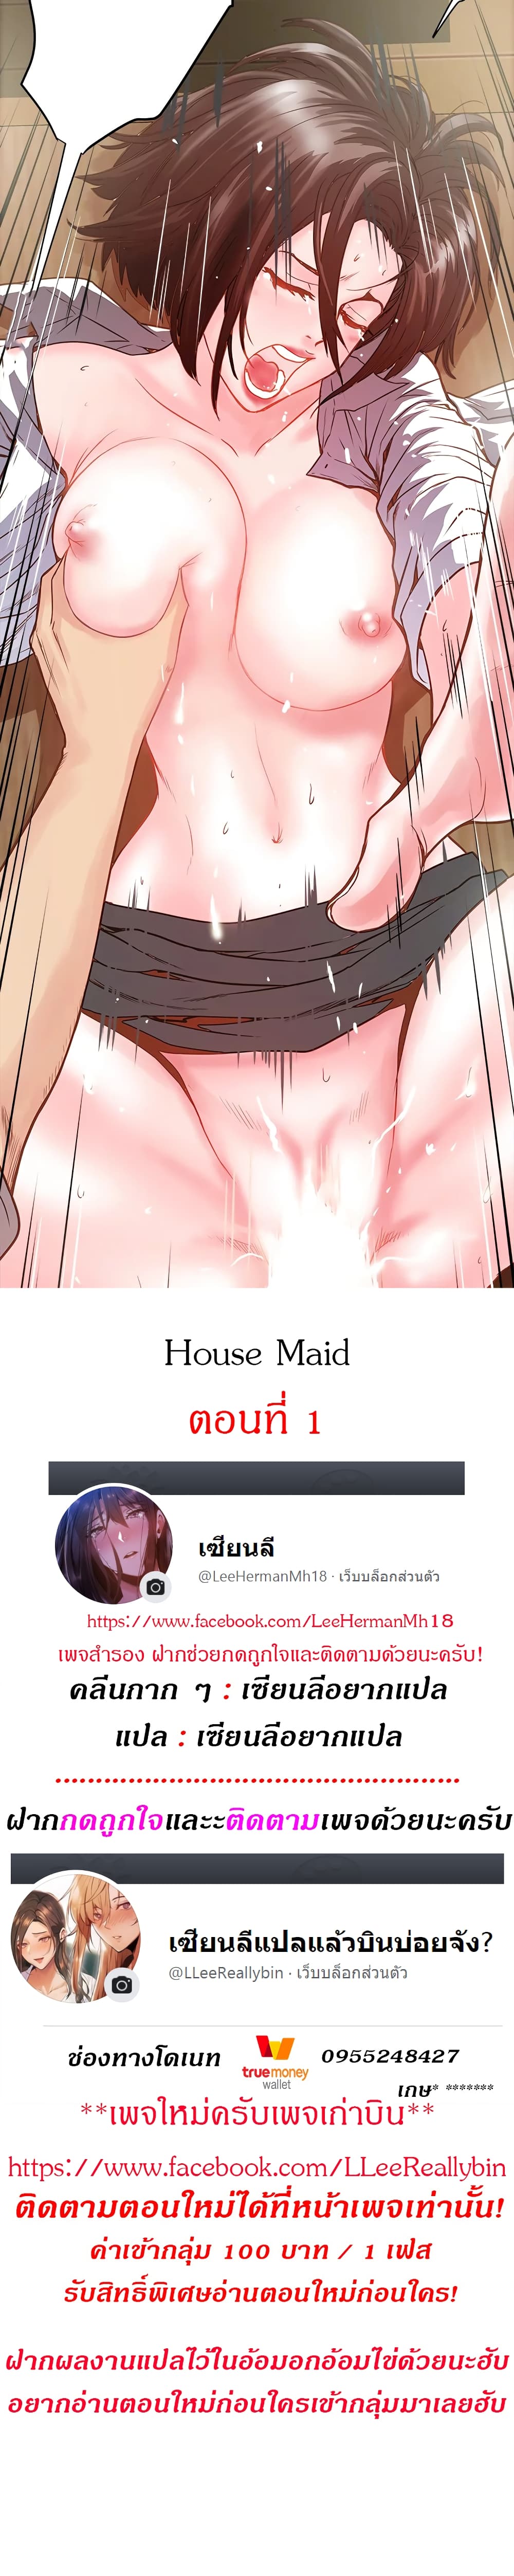 House Maid 1 (1)